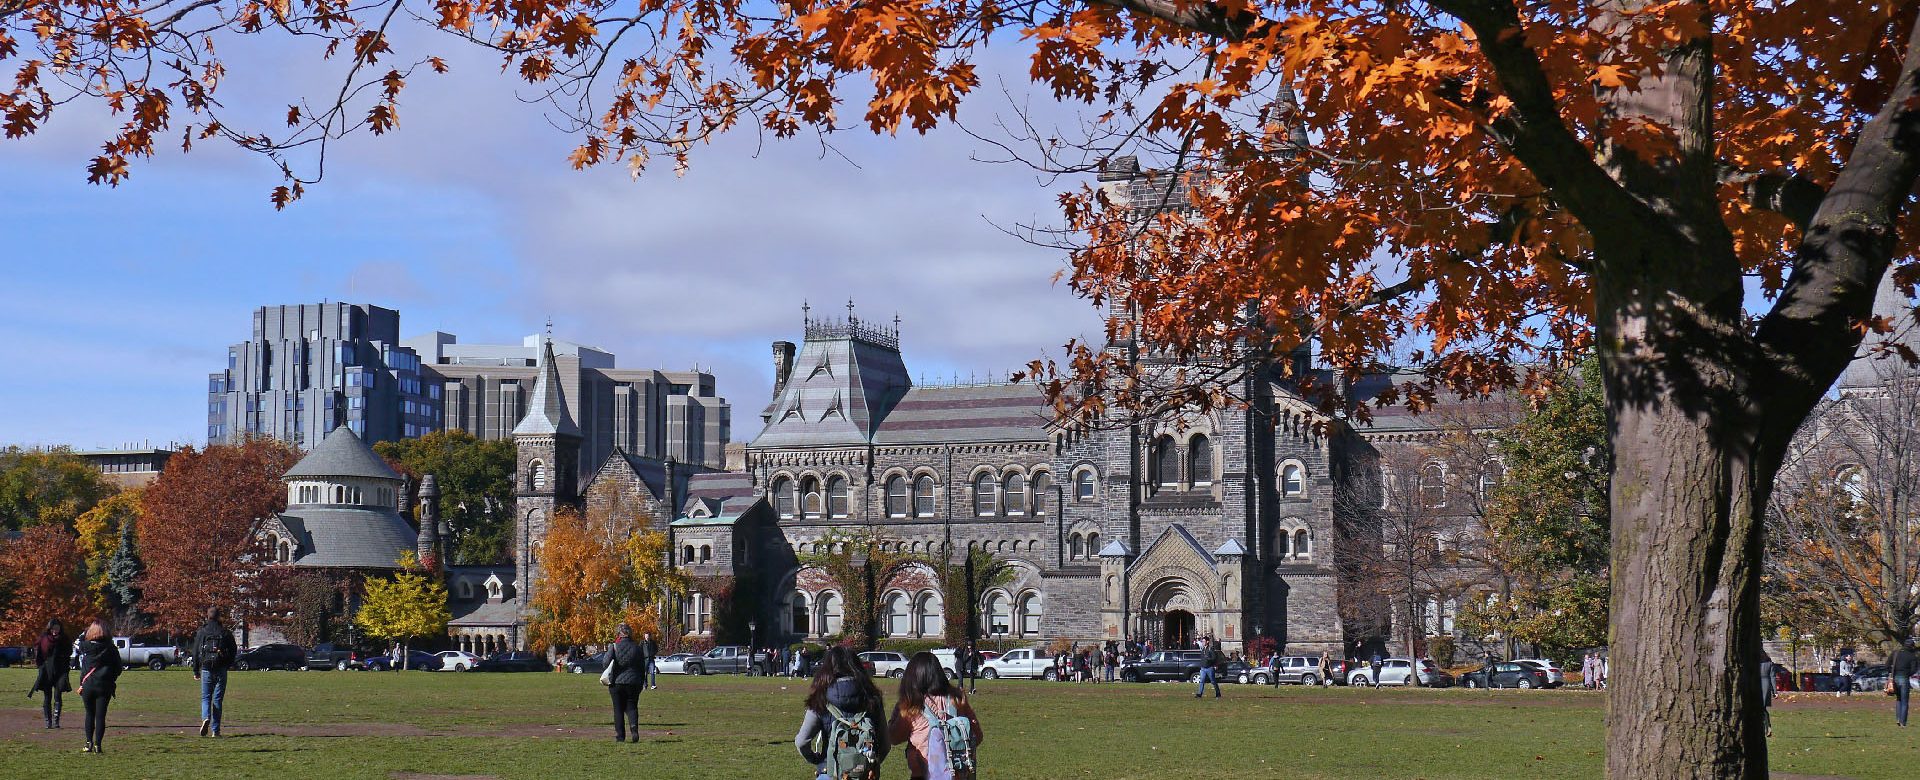 Canadian College Campus